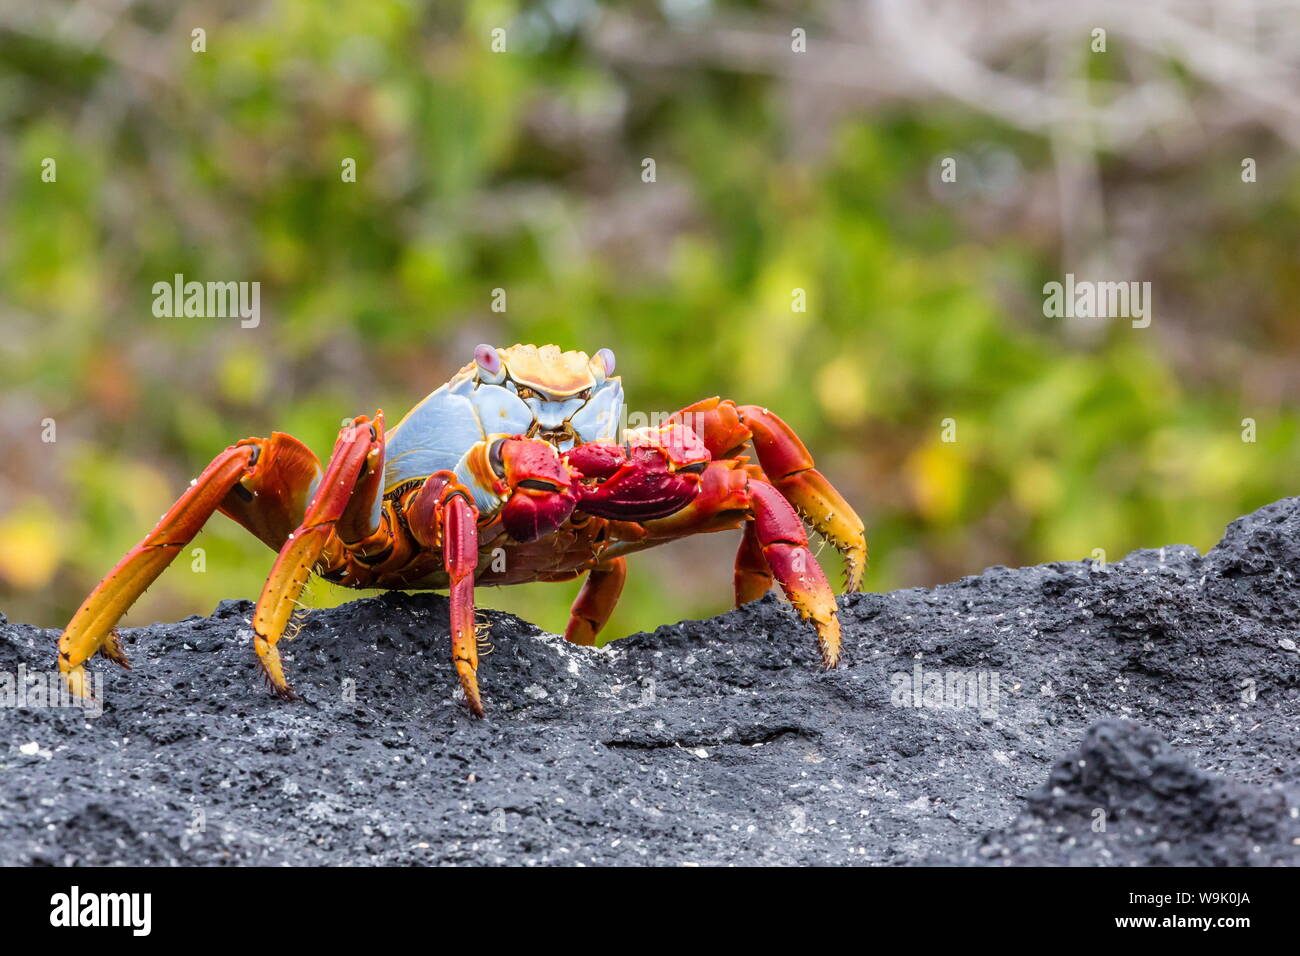 Sally Lightfoot crab (Grapsus grapsus) dans la zone intertidale, Urbina Bay, l'île Isabela, îles Galapagos, Equateur, Amérique du Sud Banque D'Images